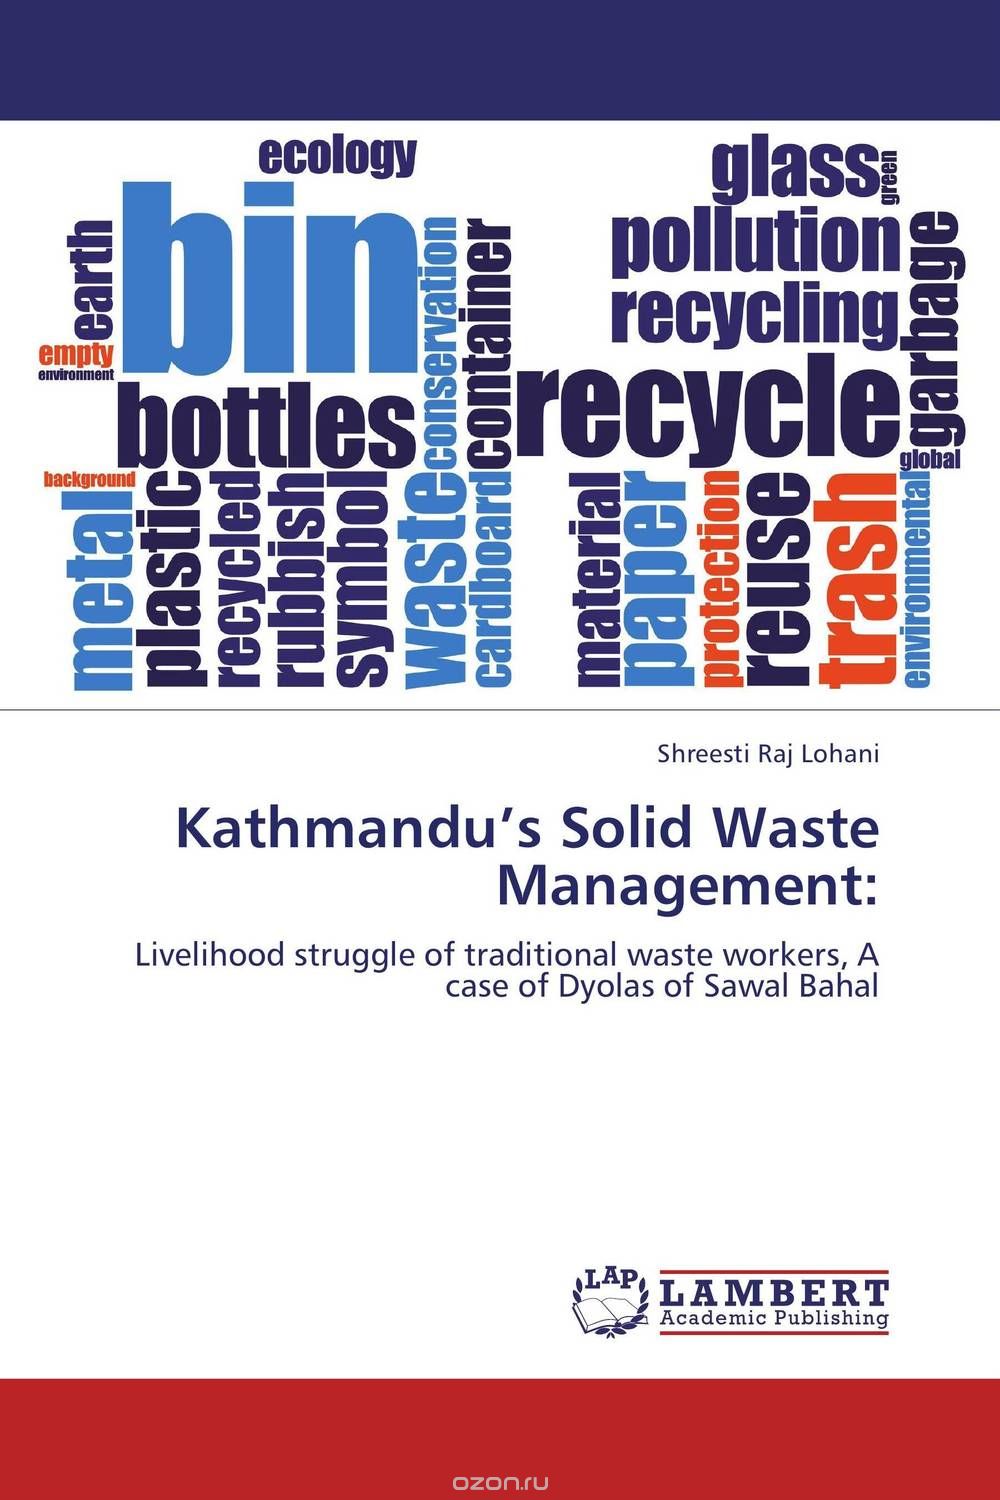 Скачать книгу "Kathmandu’s Solid Waste Management:"